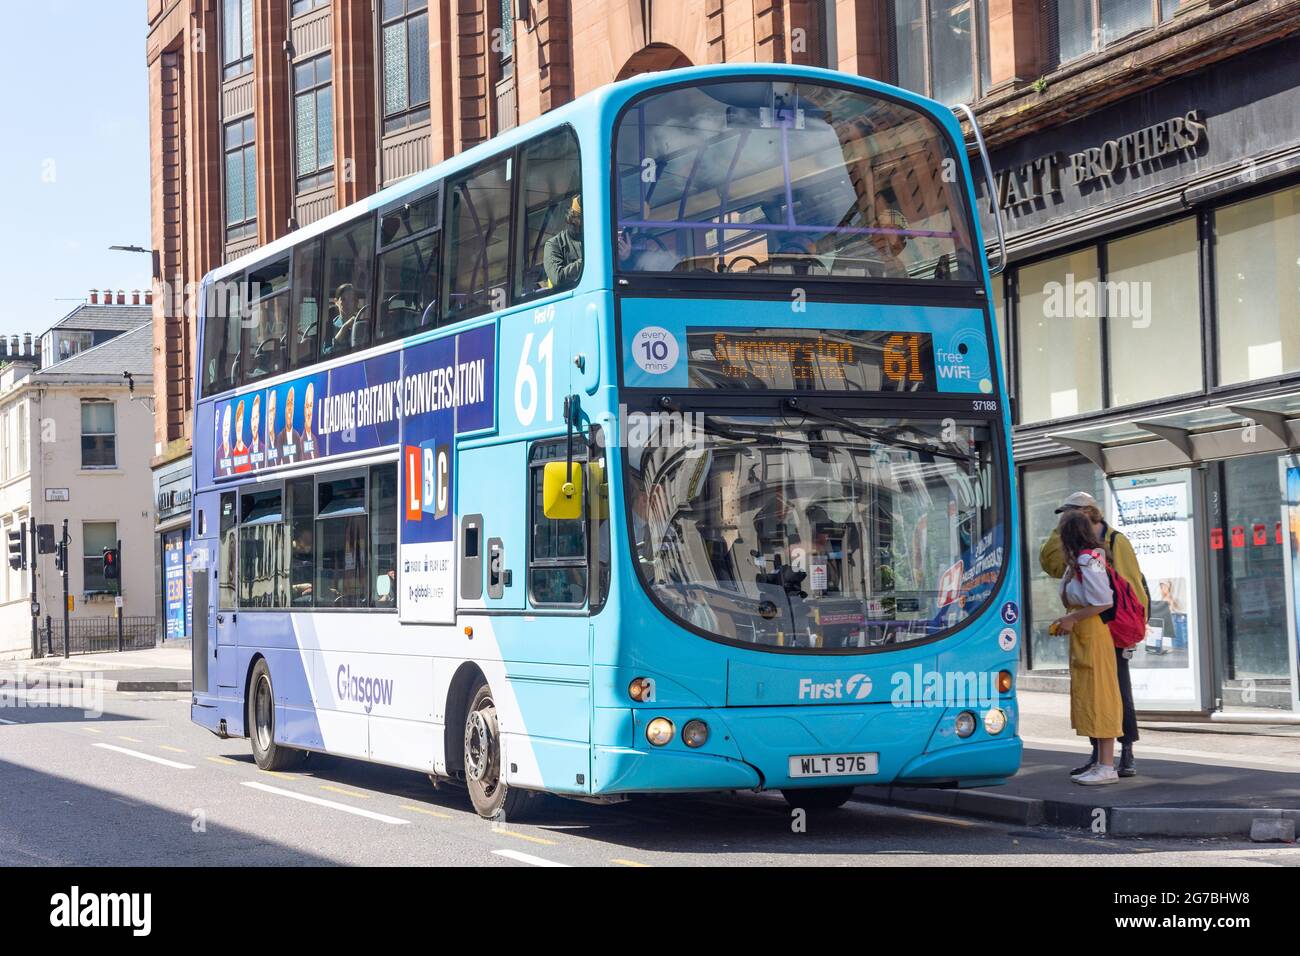 First Glasgow double-decker bus, Hope Street, Glasgow City, Scotland, United Kingdom Stock Photo